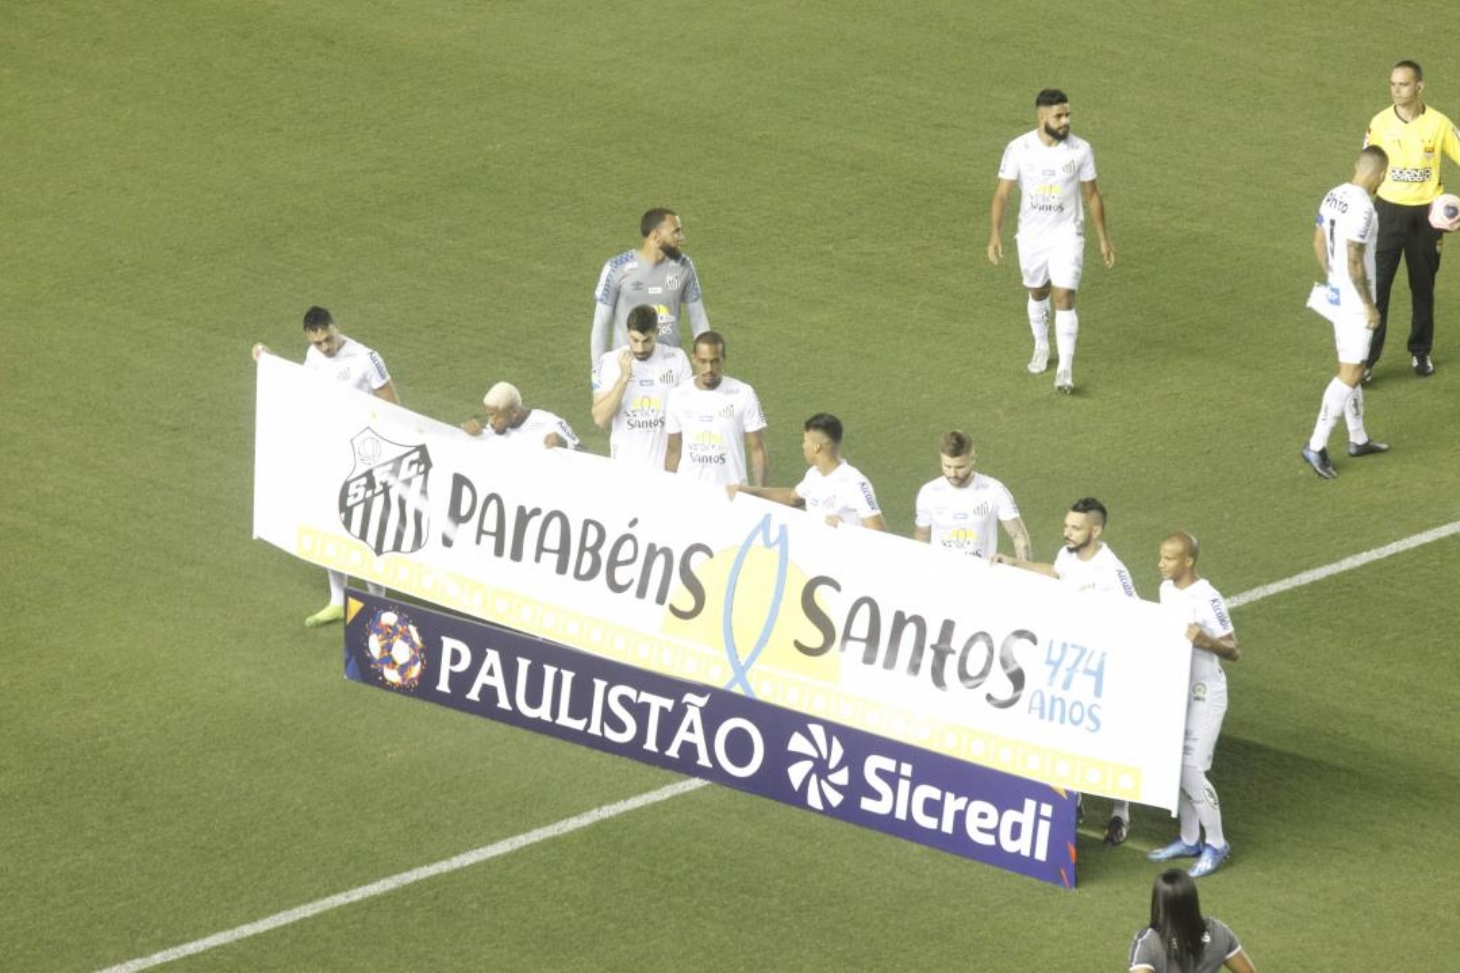 Santos FC homenageia os 474 anos da Cidade durante partida | Jornal da Orla